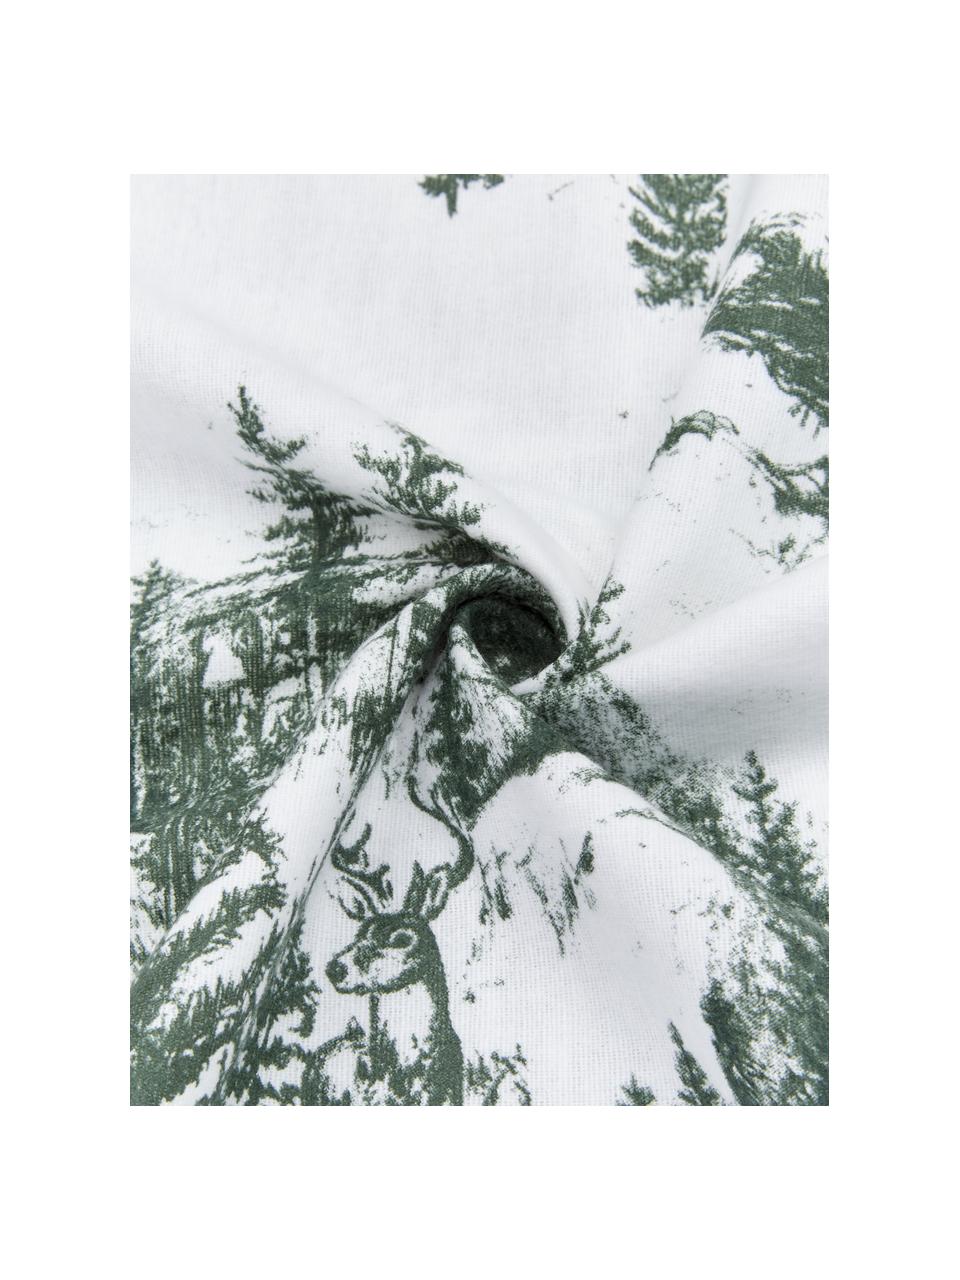 Flanell-Bettwäsche Nordic mit winterlichem Motiv in Grün/Weiss, Webart: Flanell Flanell ist ein k, Grün, Weiss, 135 x 200 cm + 1 Kissen 80 x 80 cm